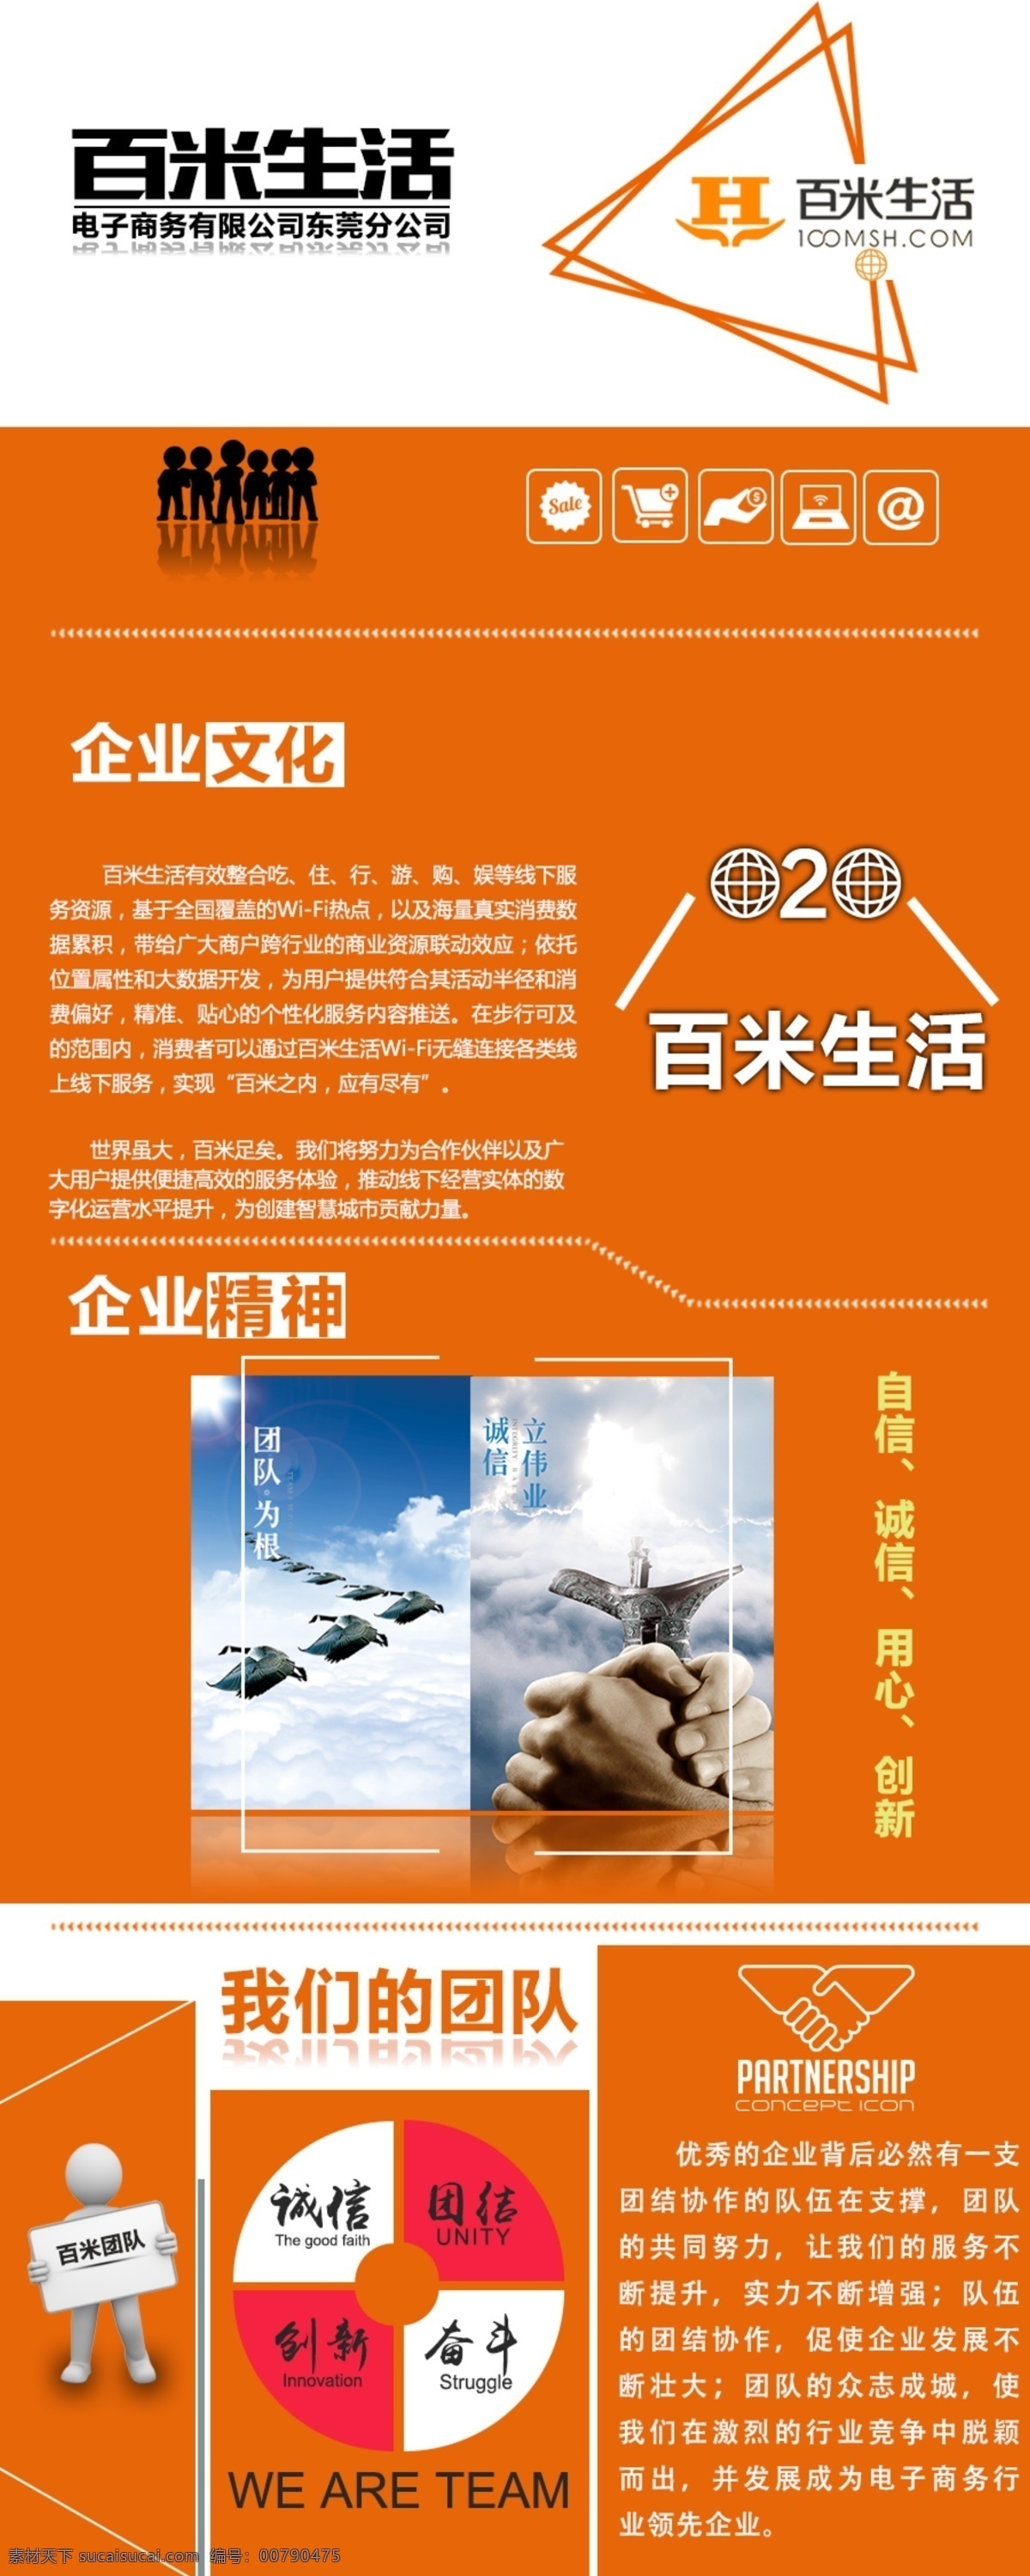 百米 生活 企业 介绍 企业精神 易拉宝 展板 广告 宣传 海报 橙色